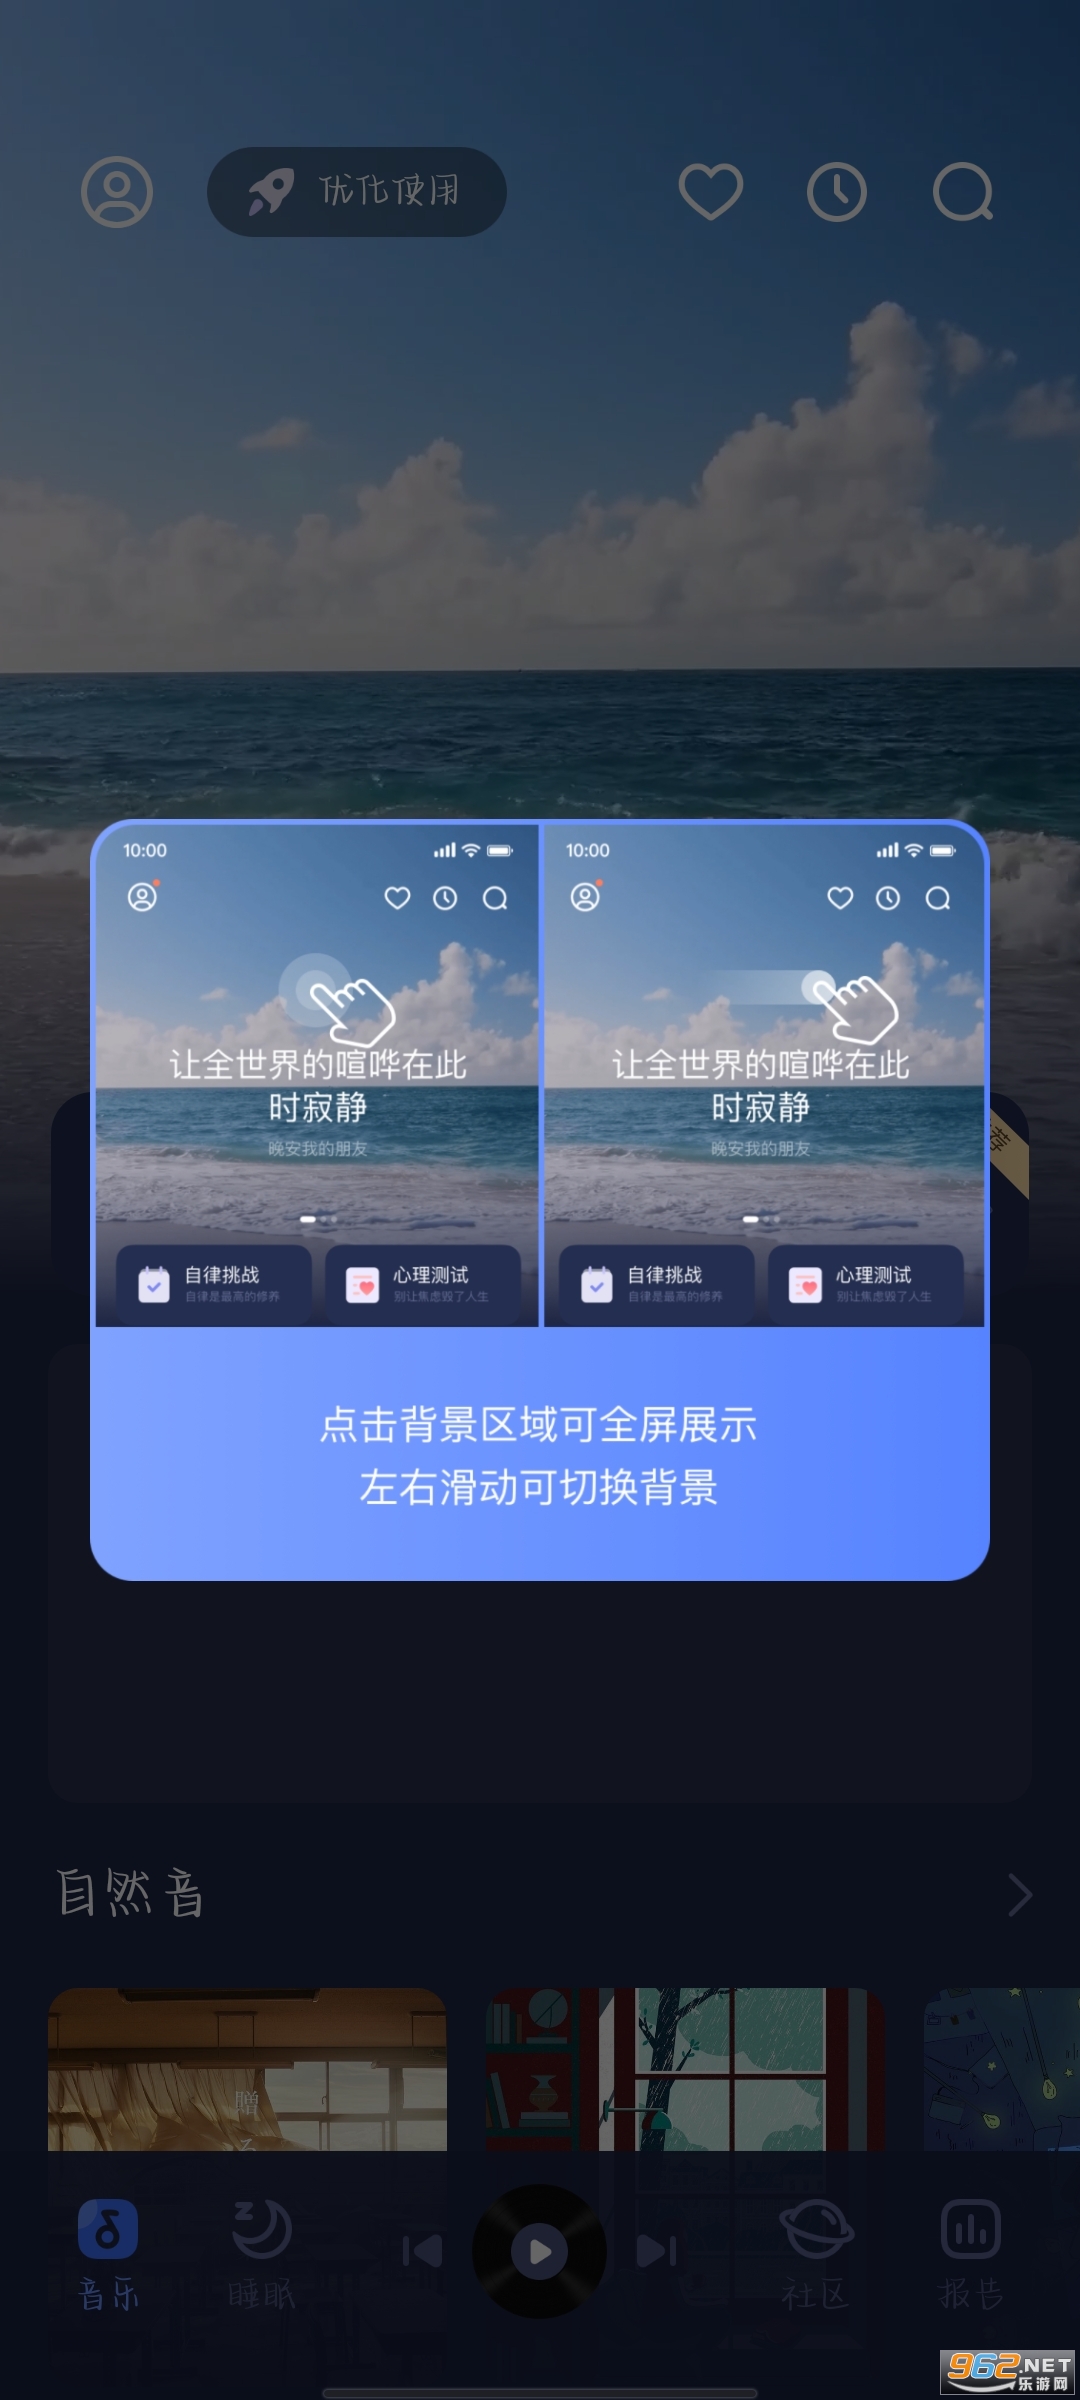 蜗牛睡眠app安卓版 v6.2.1 最新版